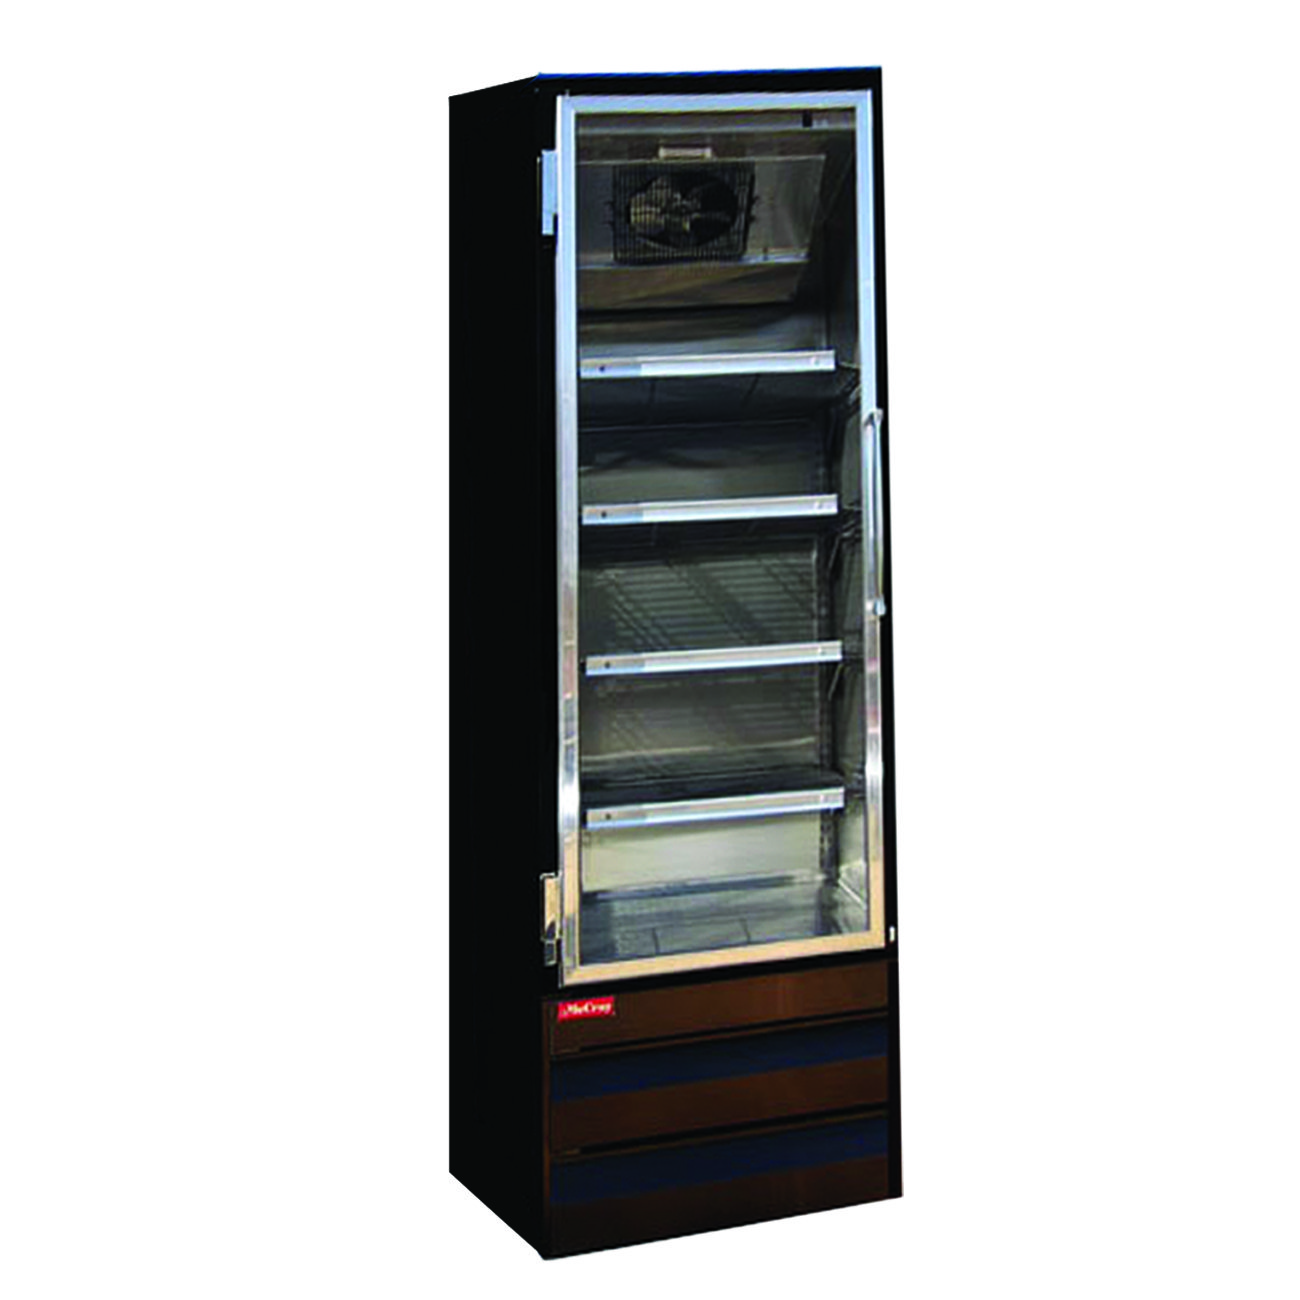 Howard-McCray GR19BM-B Merchandiser Refrigerator